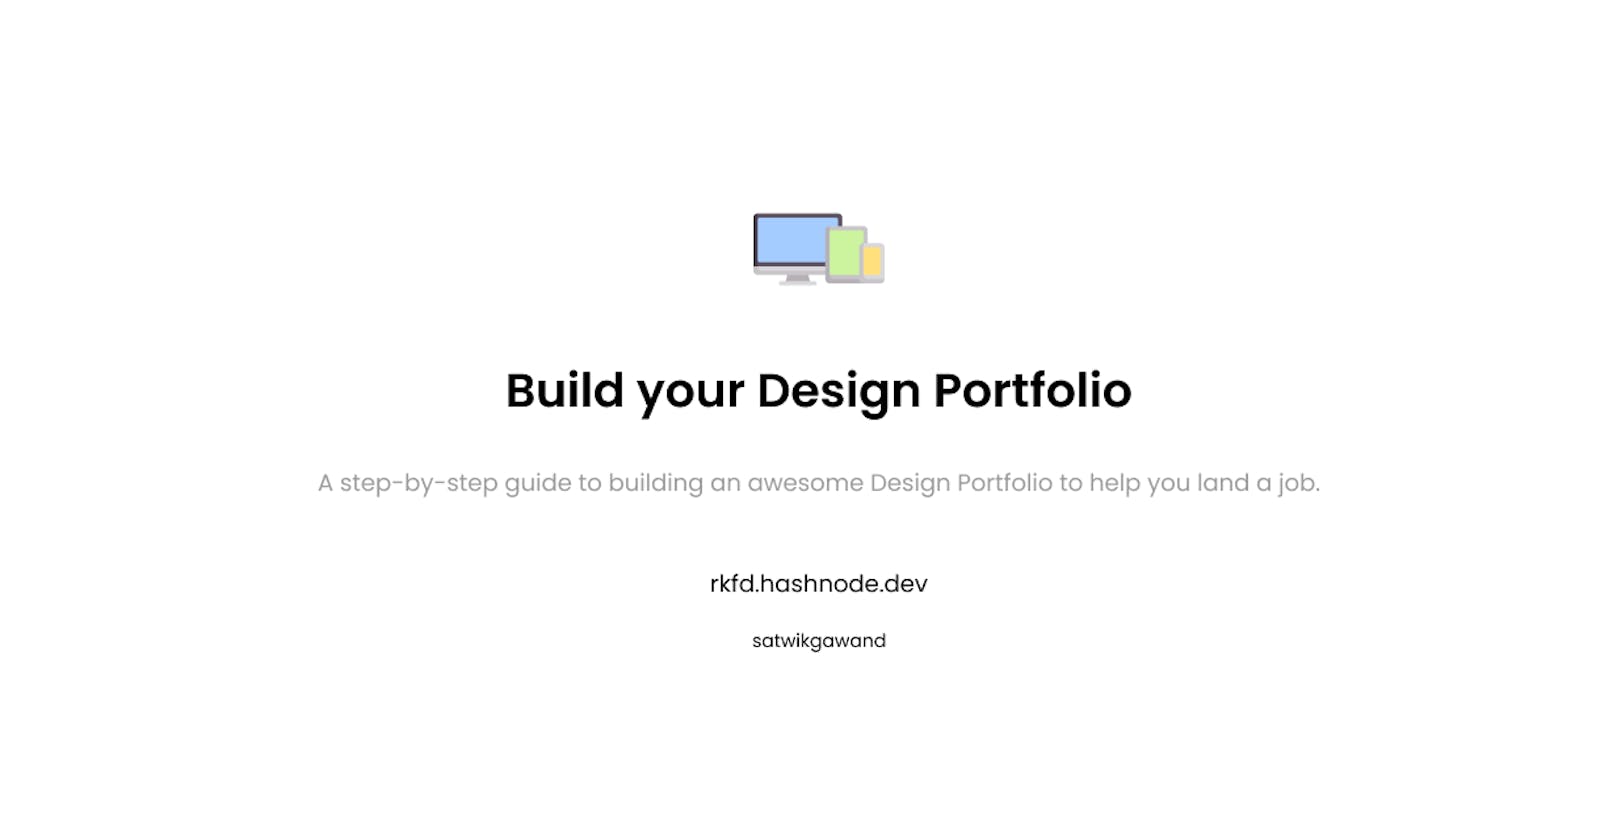 Build your Design Portfolio